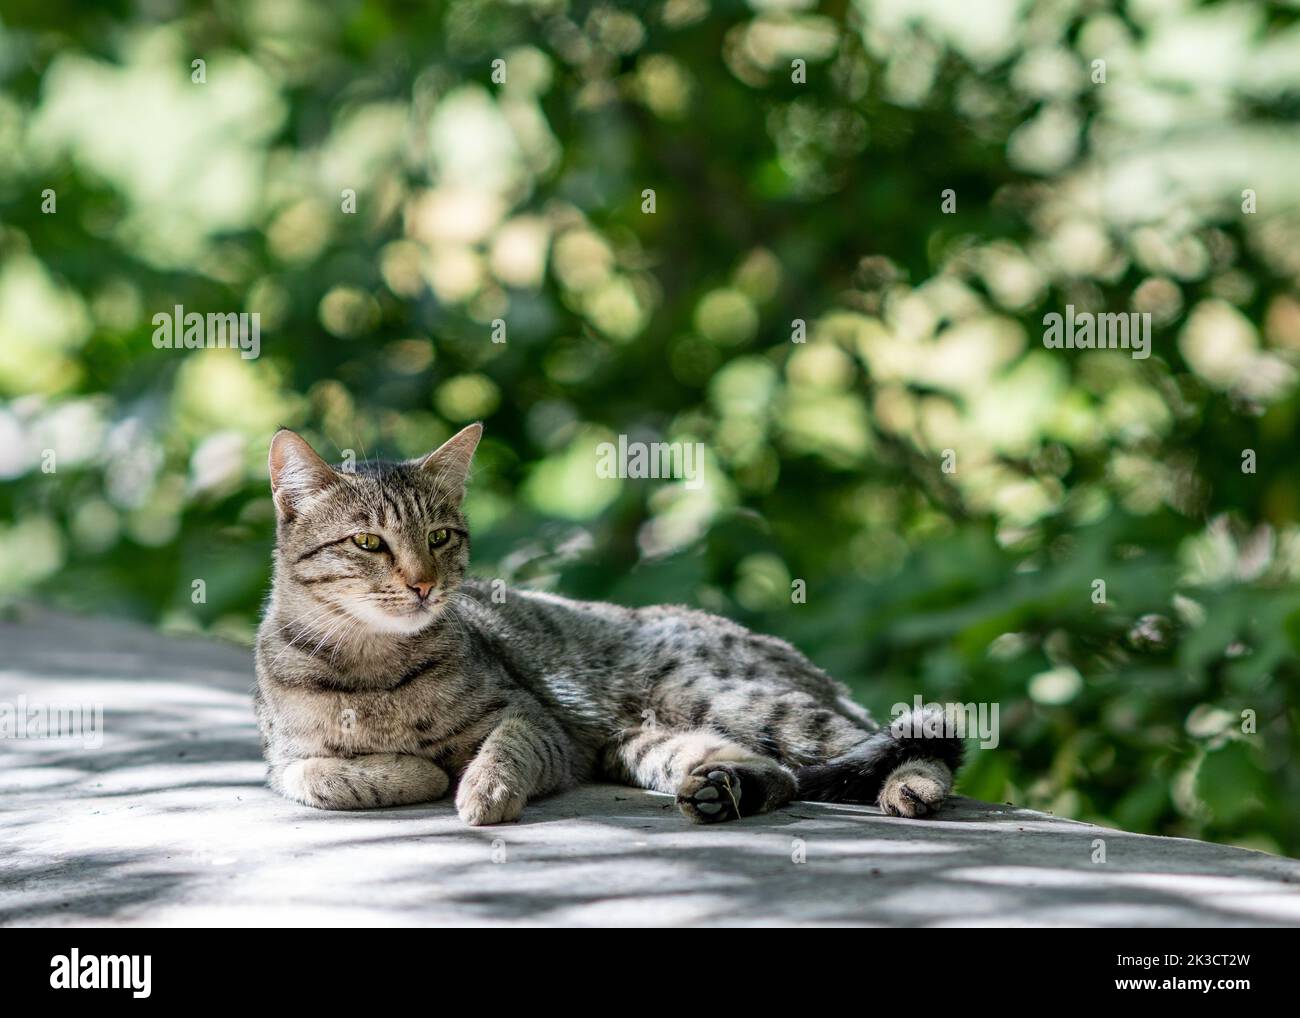 Un adorable chat domestique est de se reposer avec un arrière-plan de feuillage flou. Photo de haute qualité Banque D'Images